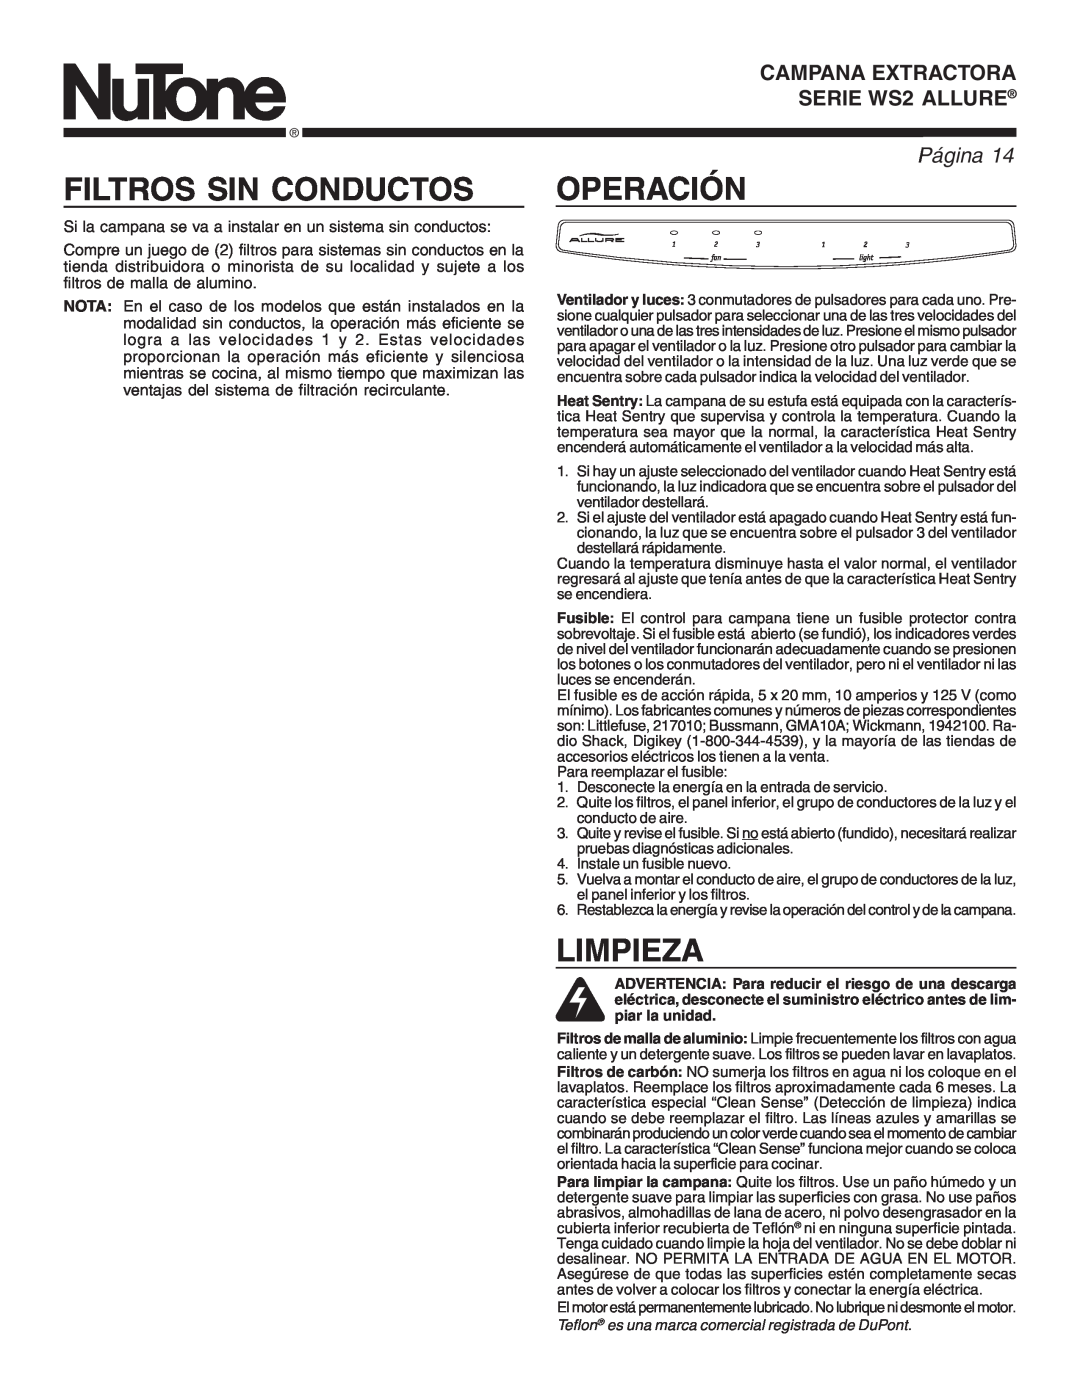 NuTone manual Filtros Sin Conductos, Operación, Limpieza, CAMPANALLUREEXTRACTORAWS2 SERIES, SERIE WS2RANGEALLUREHOOD 